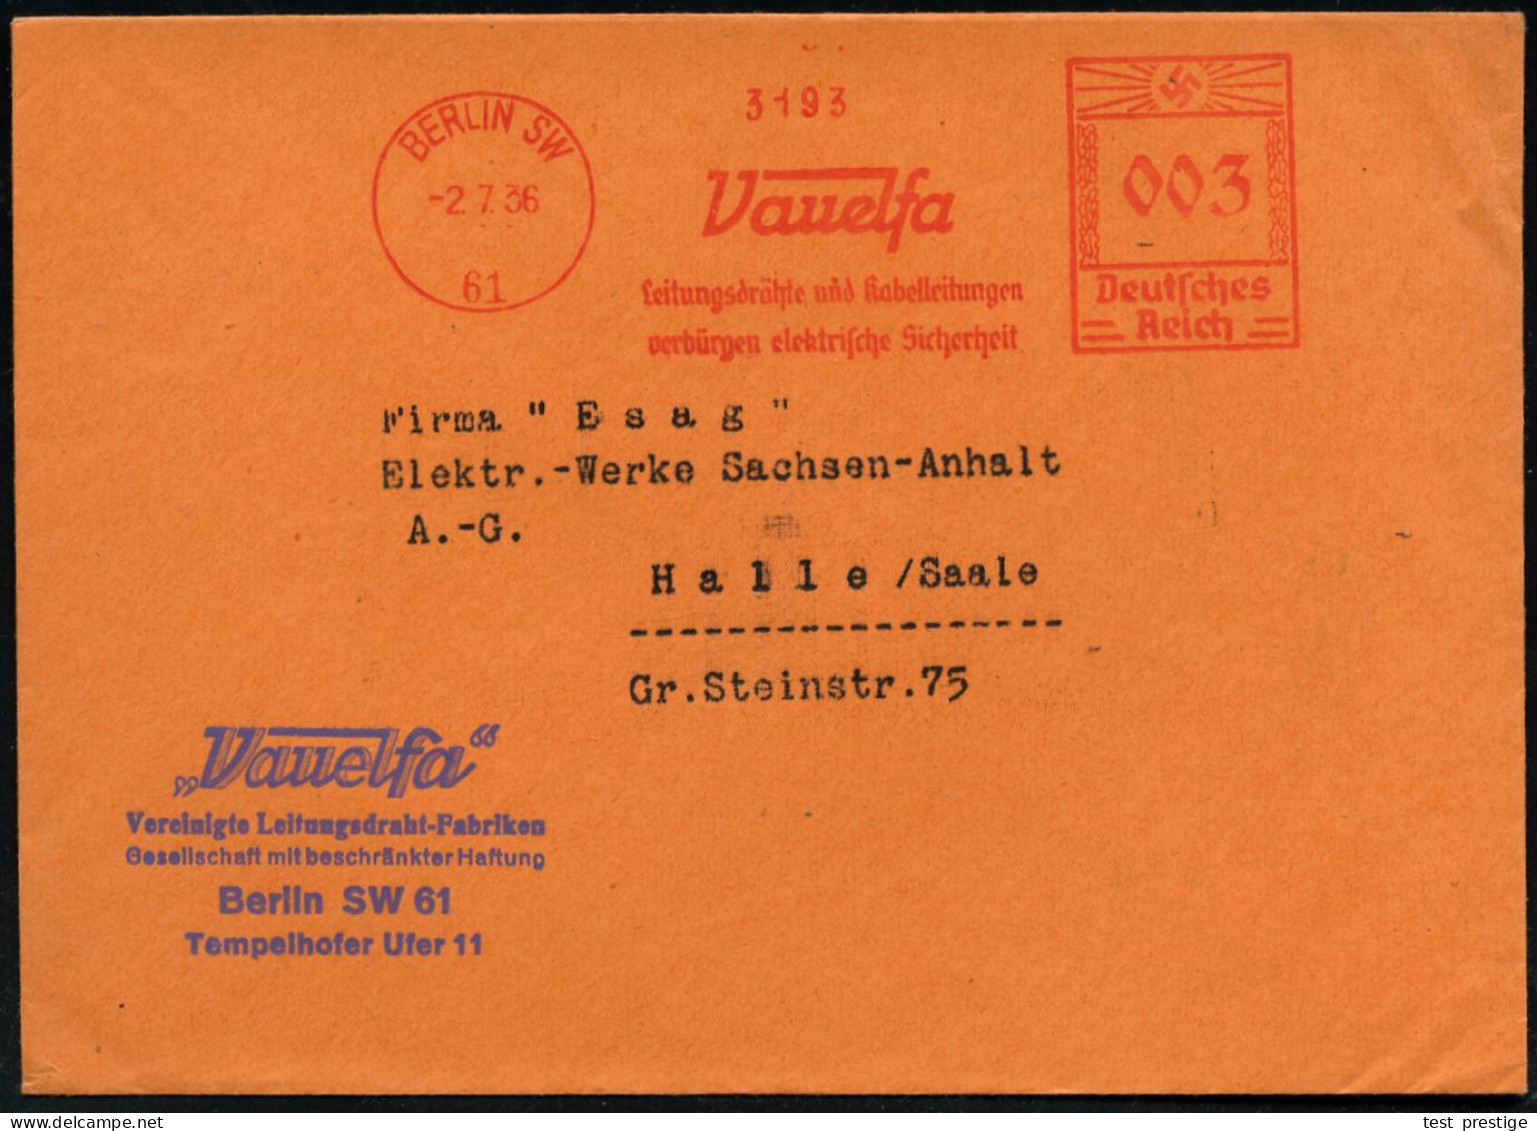 BERLIN SW/ 61/ Vauelfa/ Leitungsdrähte U.Kabelleitungen/ Verbürgen Elektrische Sicherheit 1936 (2.7.) AFS Francotyp (Sch - Other & Unclassified